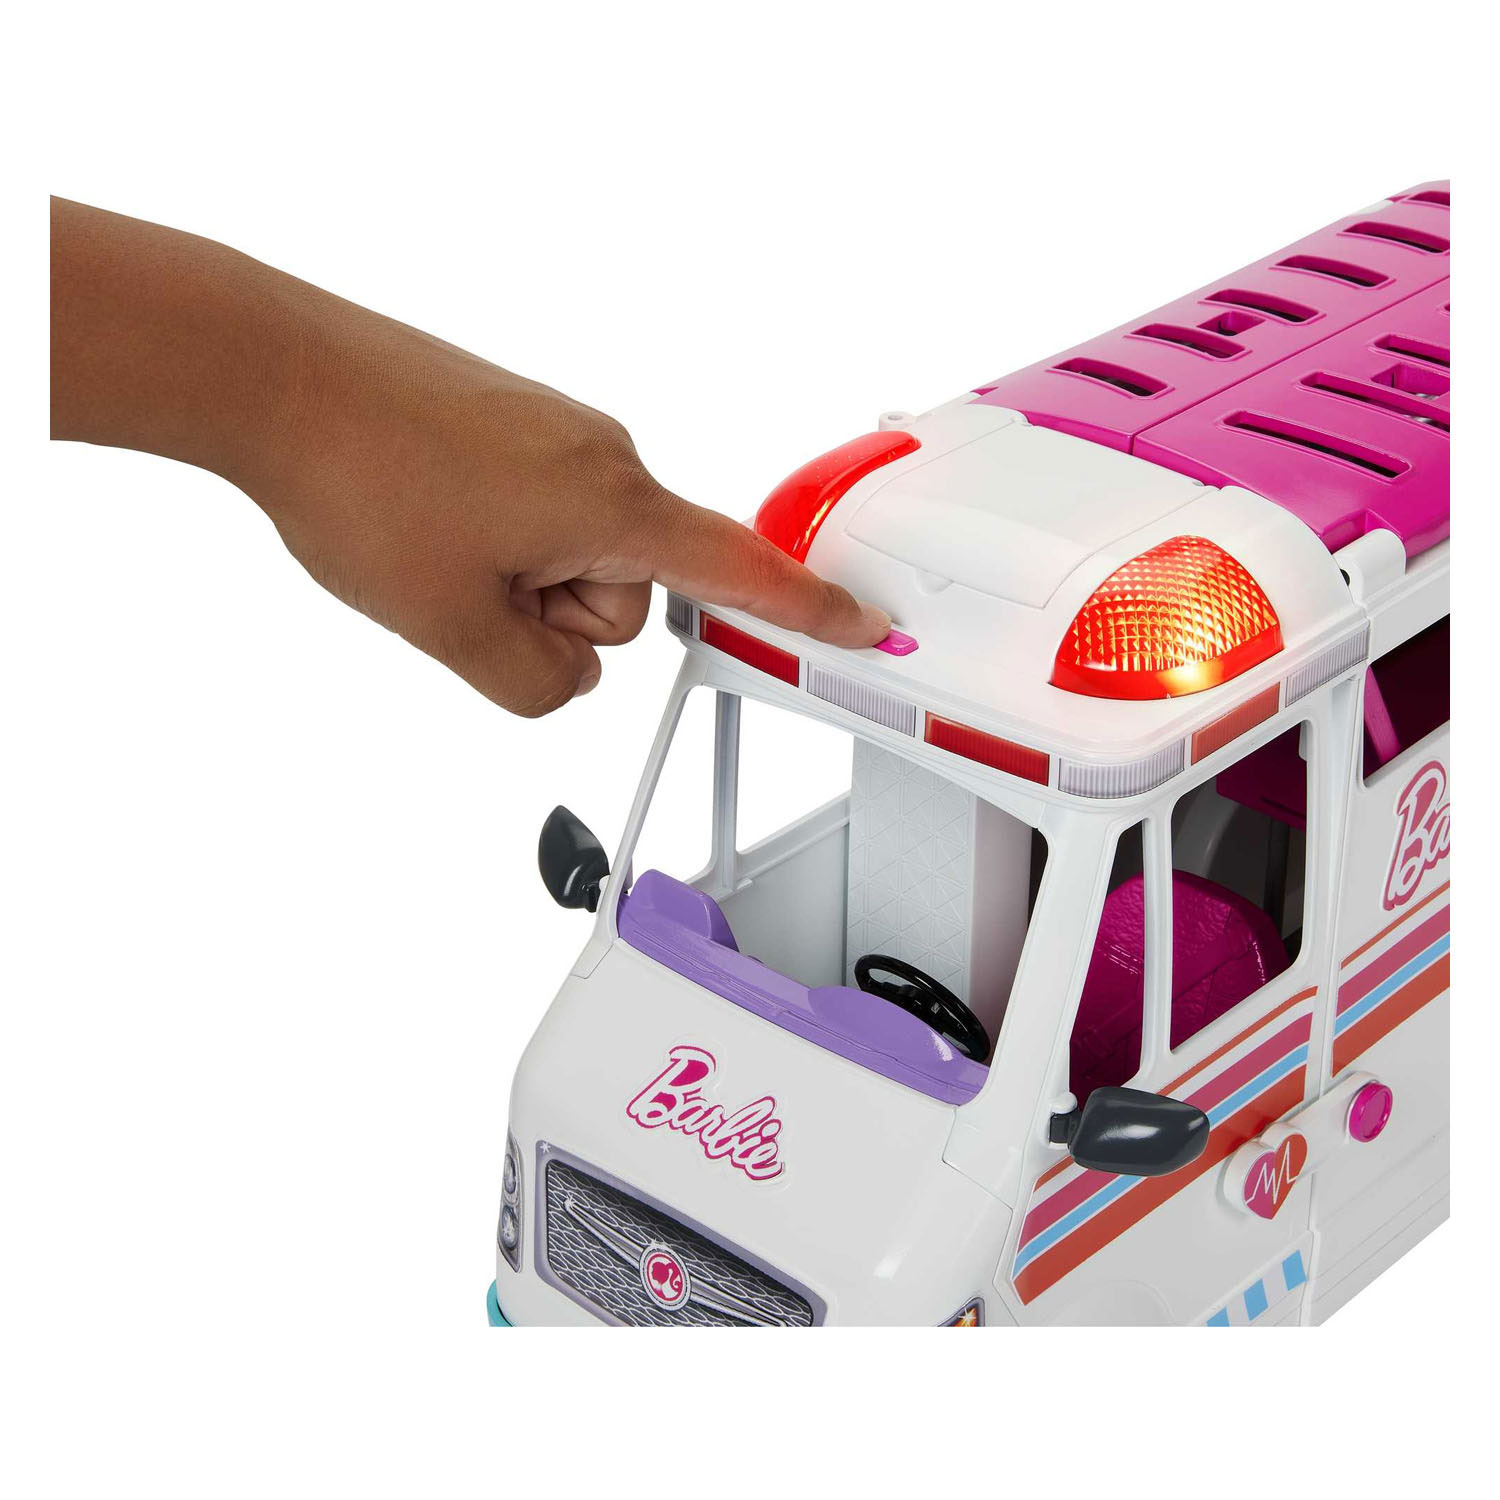 Coffret de jeu Barbie Ambulance Clinic